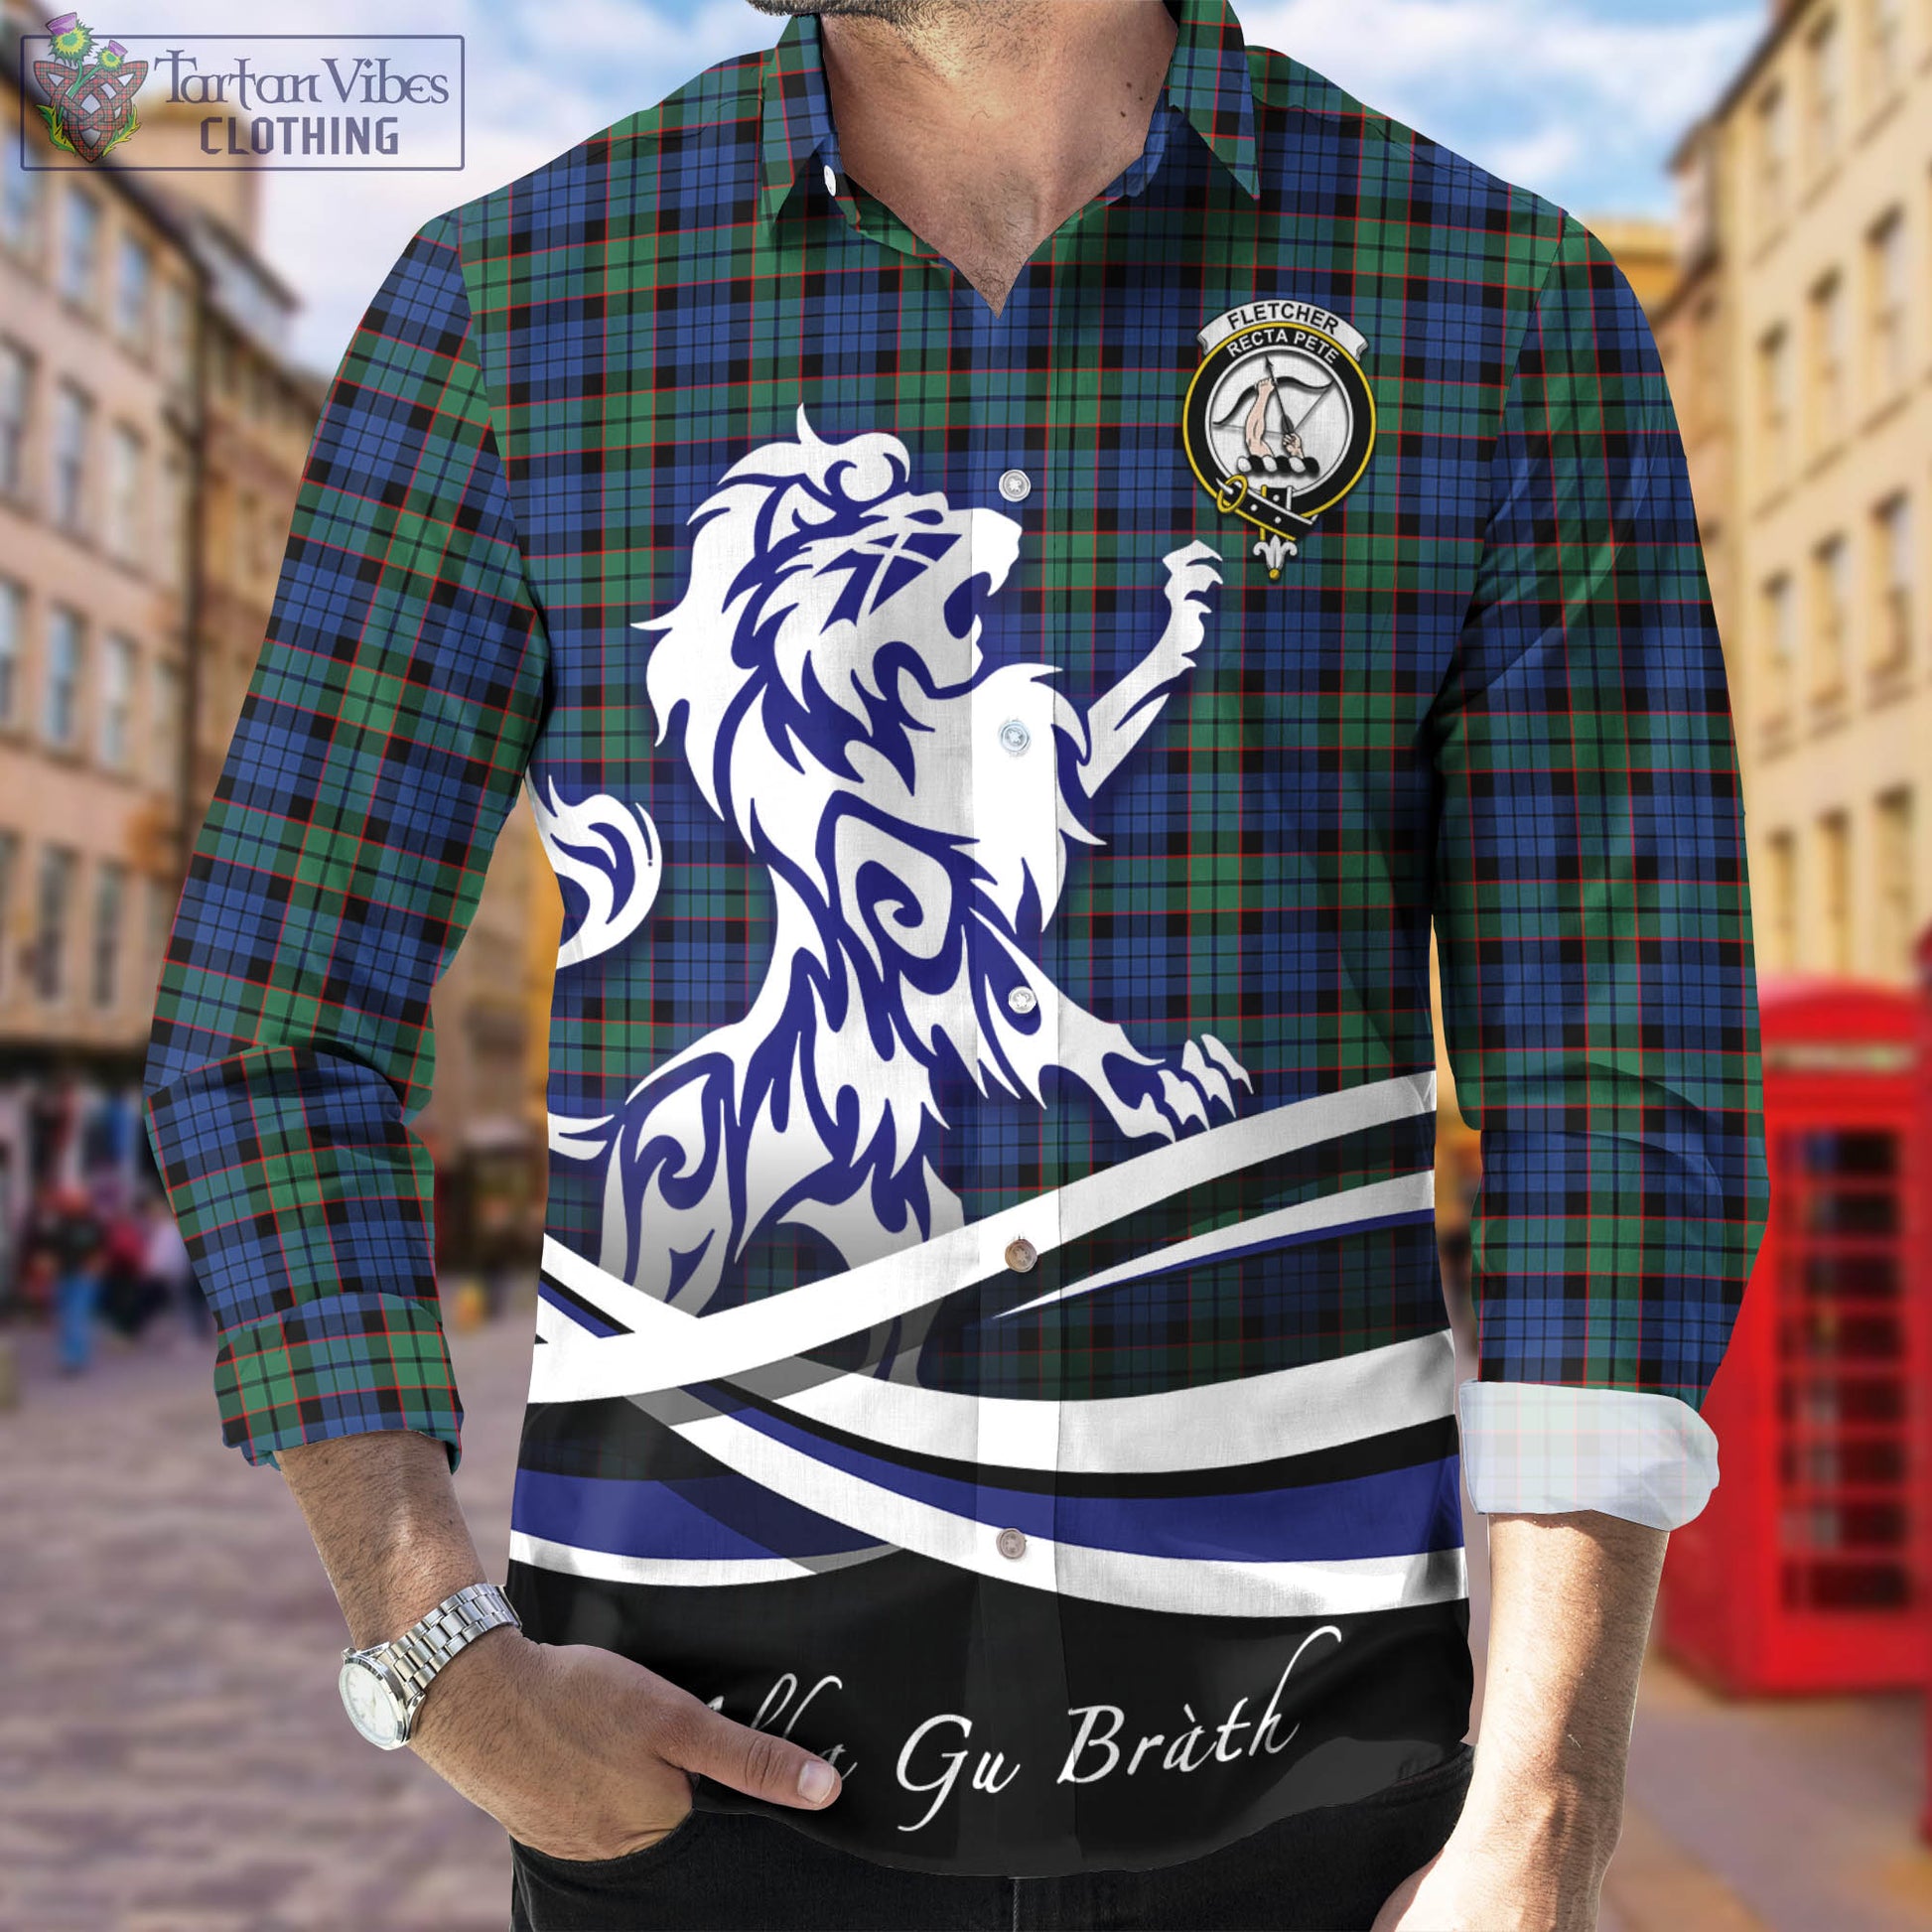 fletcher-ancient-tartan-long-sleeve-button-up-shirt-with-alba-gu-brath-regal-lion-emblem